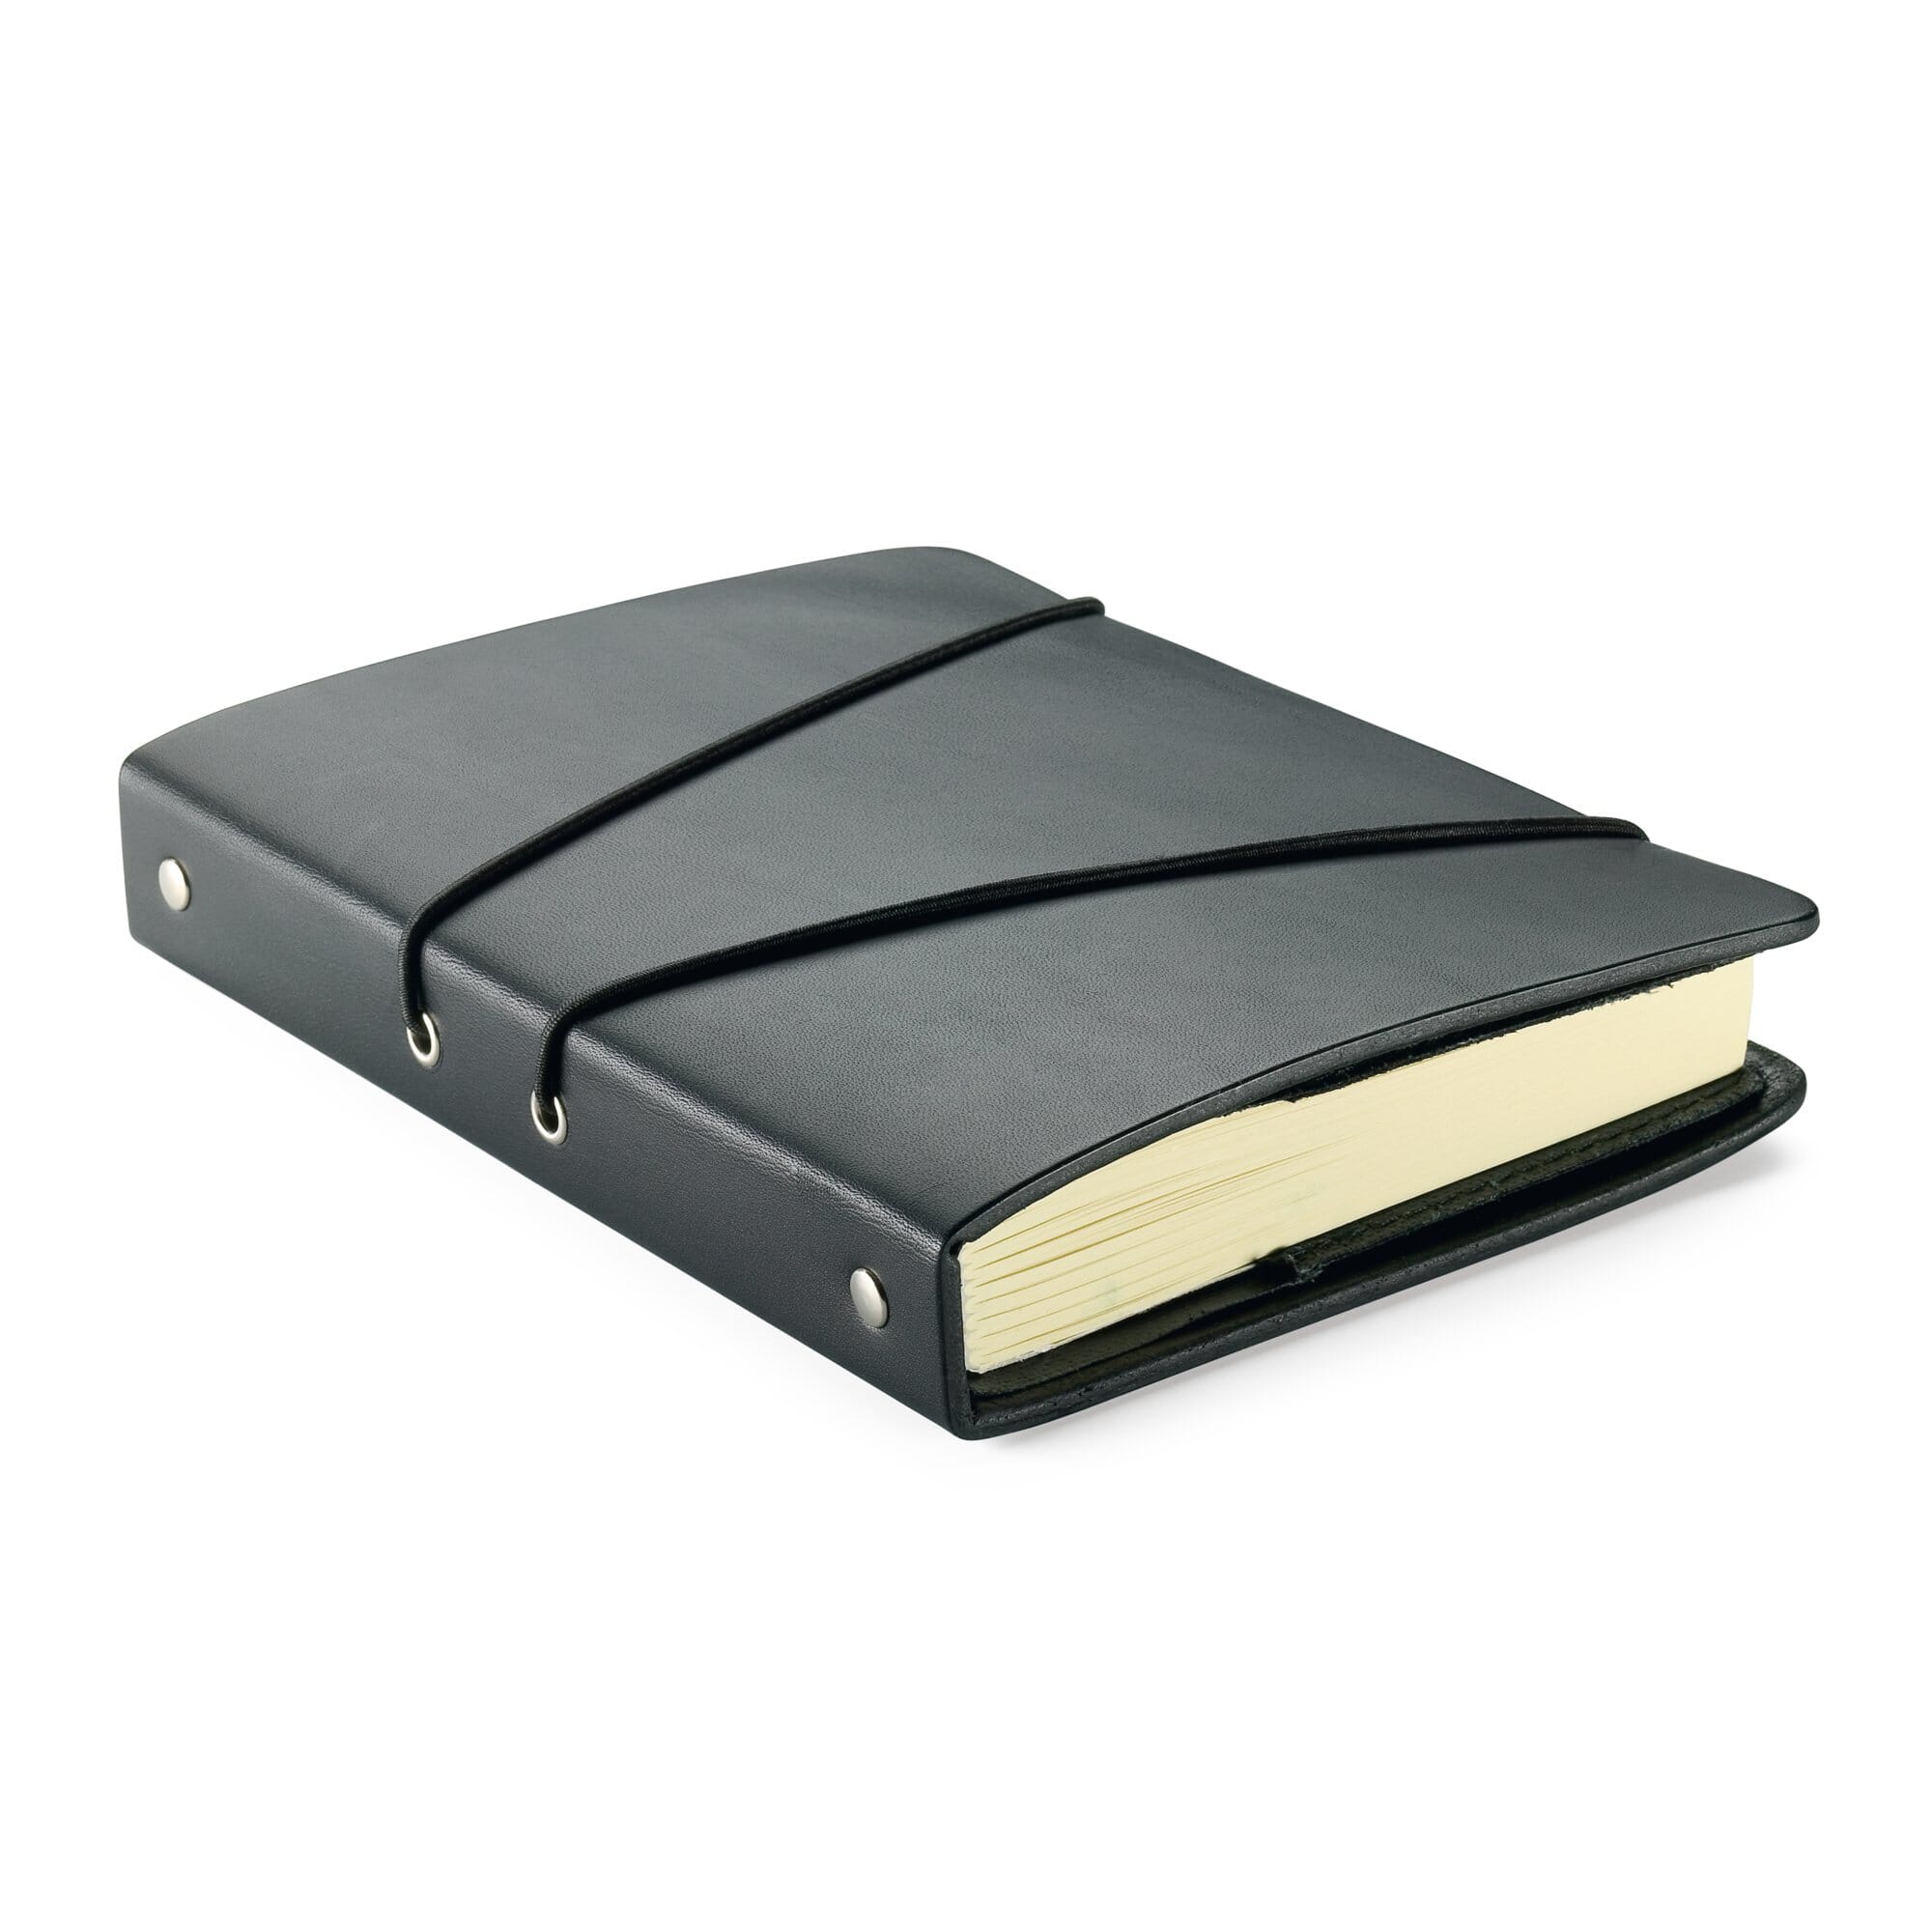 Notebook Voyager, black